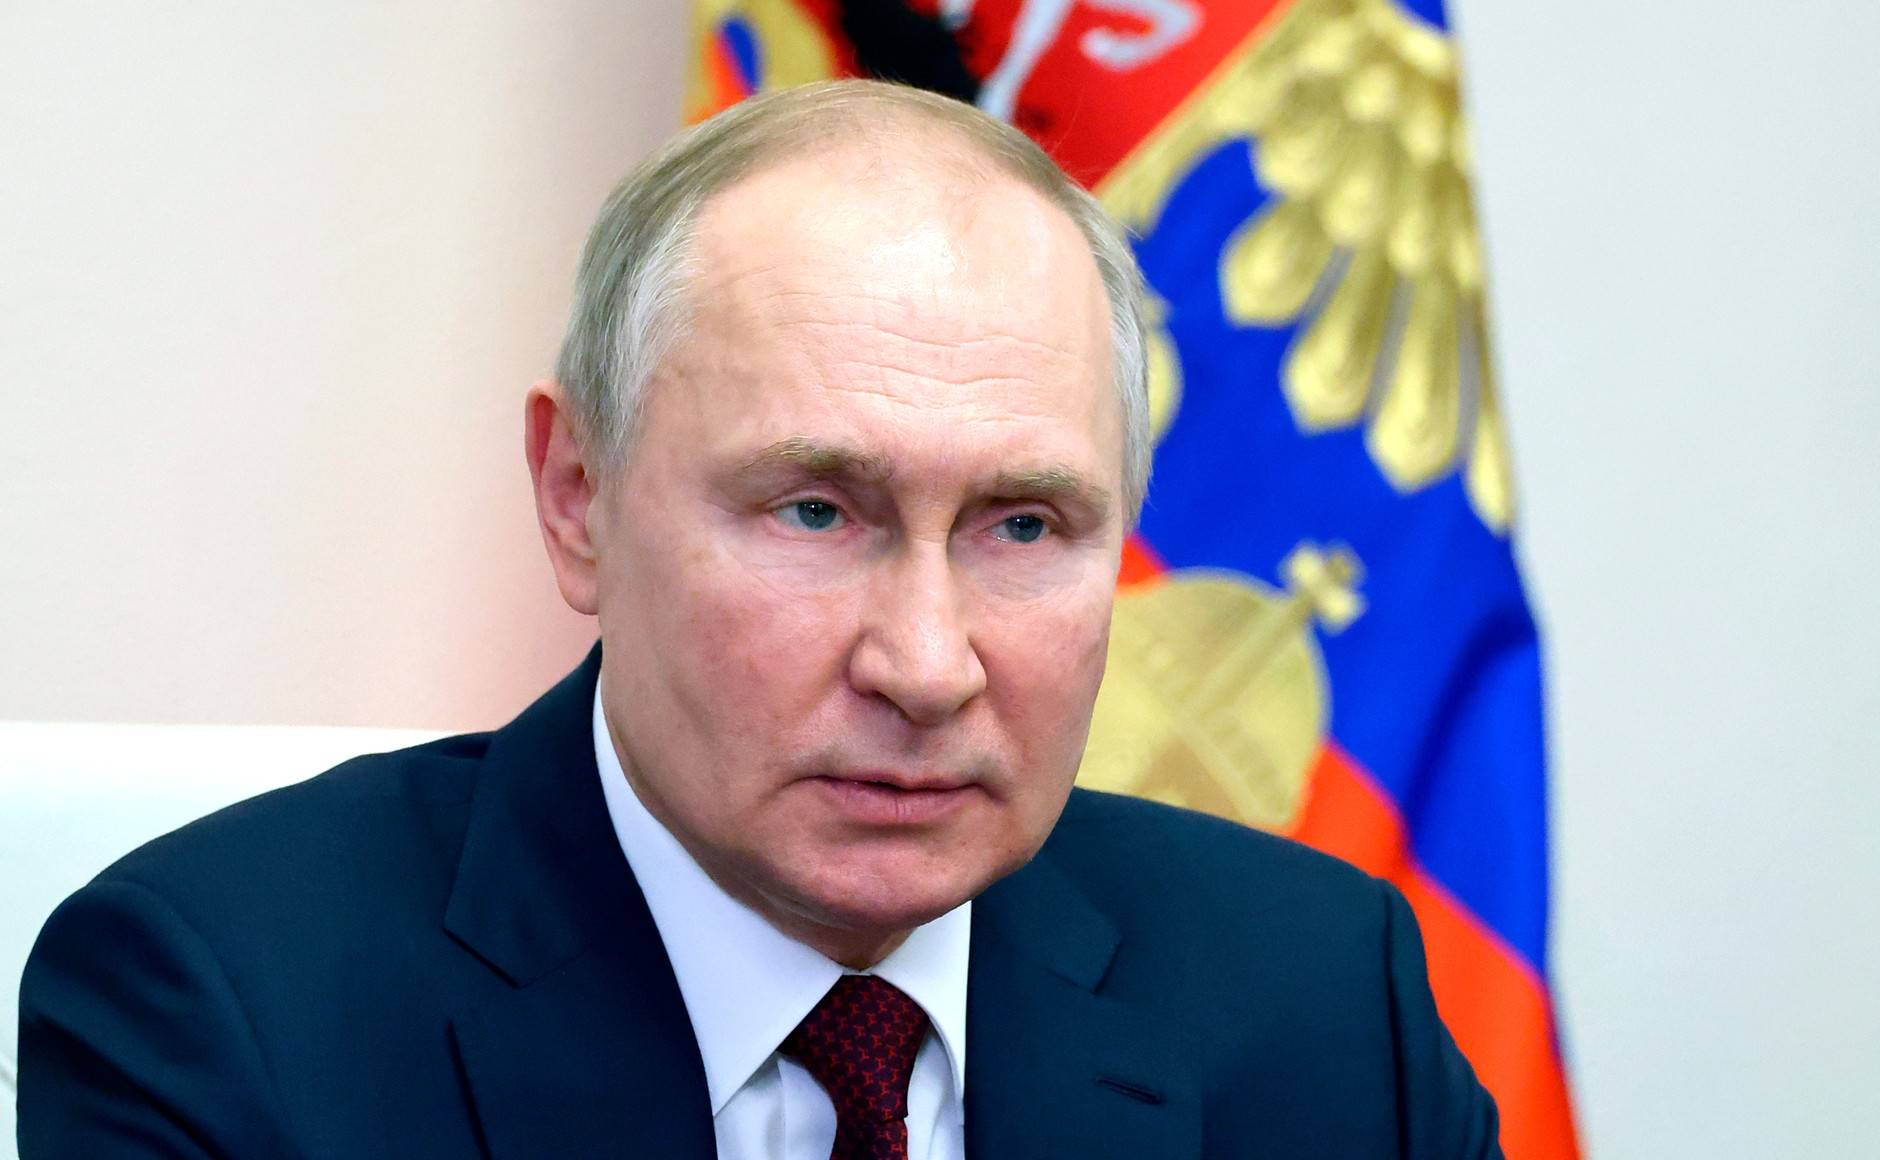 Evakuiert Putin die ganze Krim? Zwangsevakuierung könnte angeordnet werden - Panik in Russland